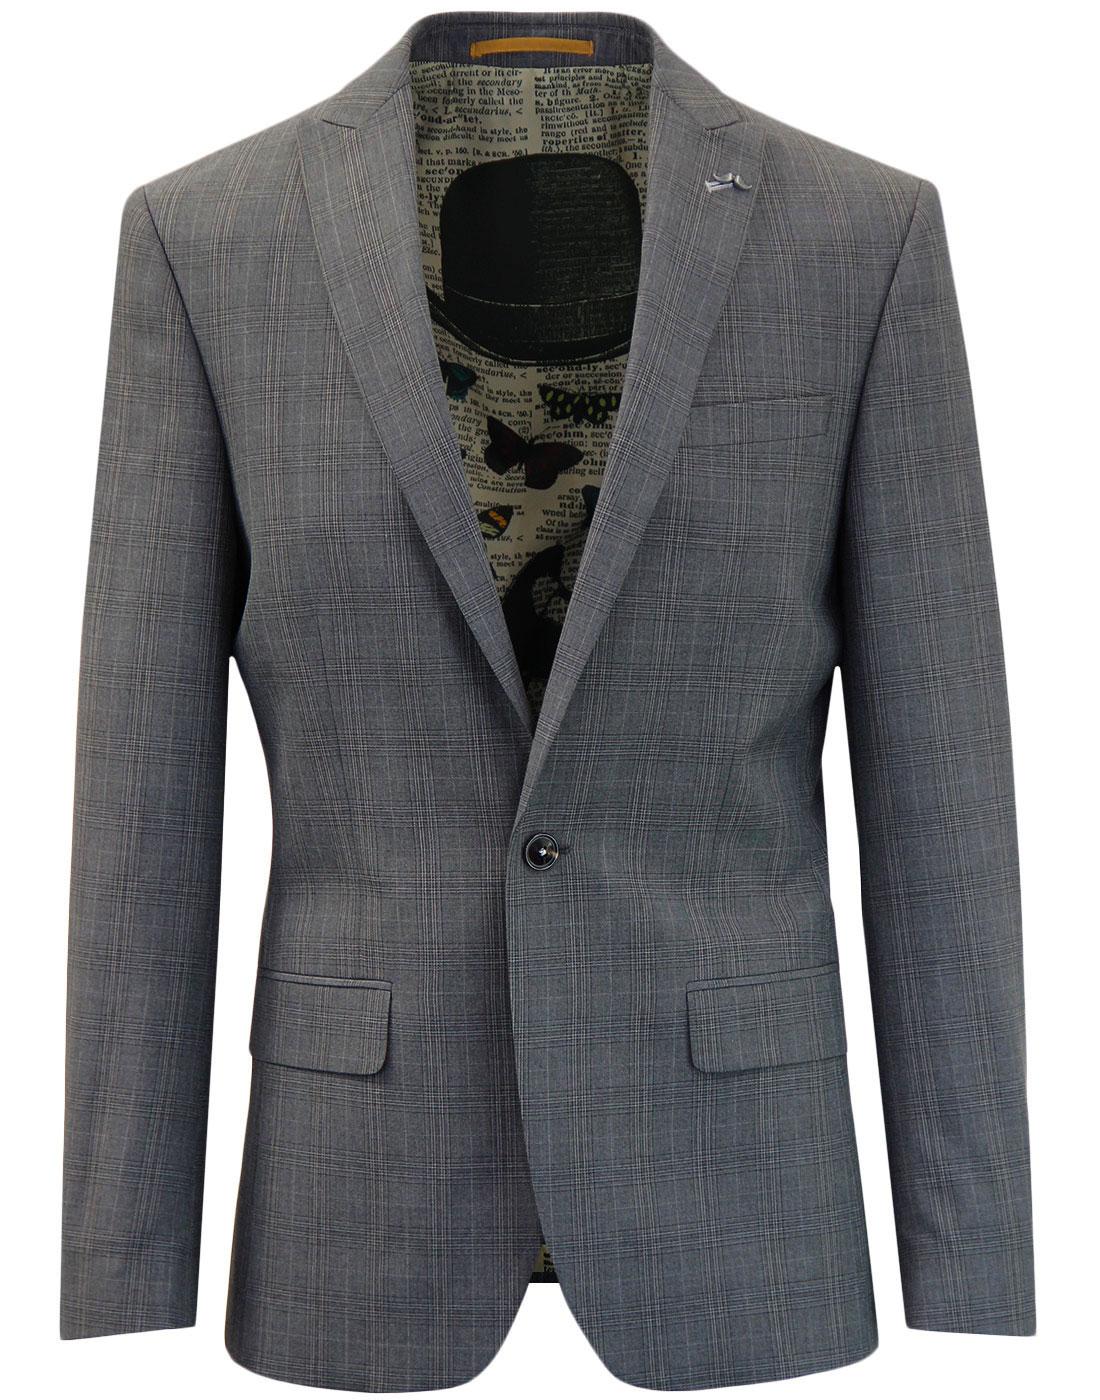 ANTIQUE ROGUE 1 Button POW Check Suit Jacket GREY